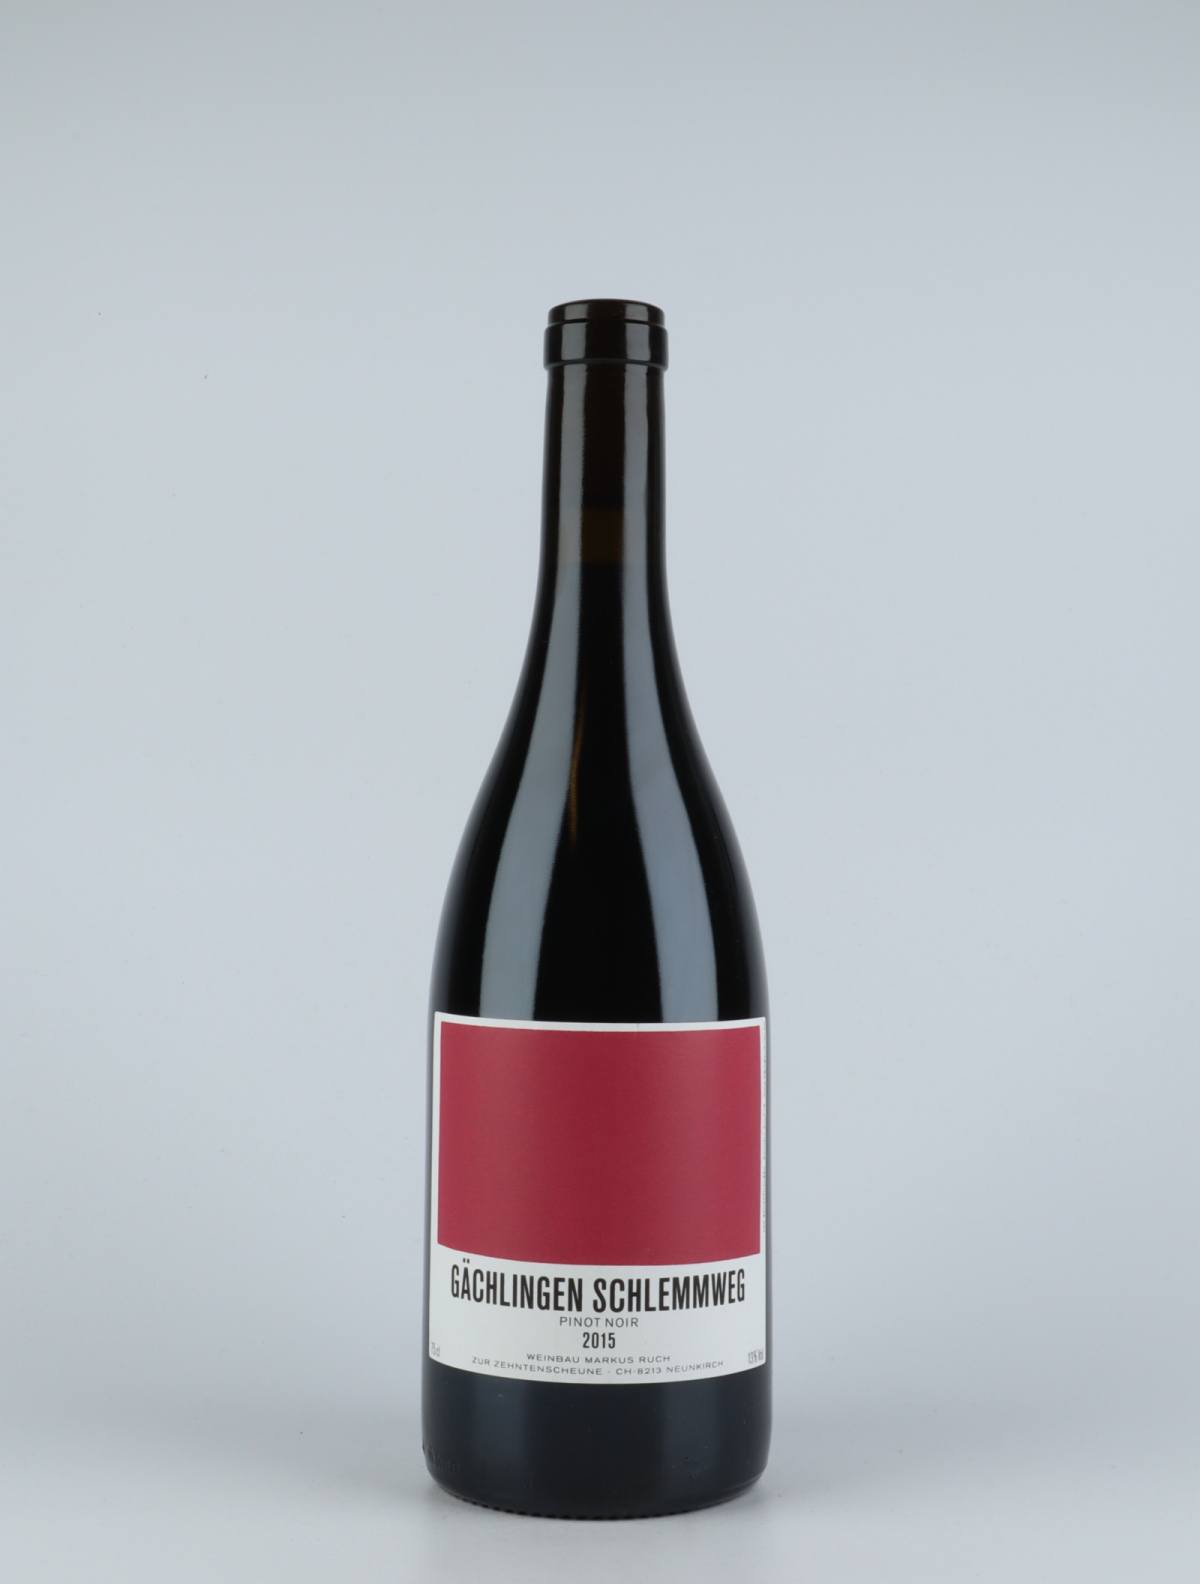 A bottle 2015 Gächlingen Schlemmweg Red wine from Markus Ruch, Schaffhausen in Switzerland